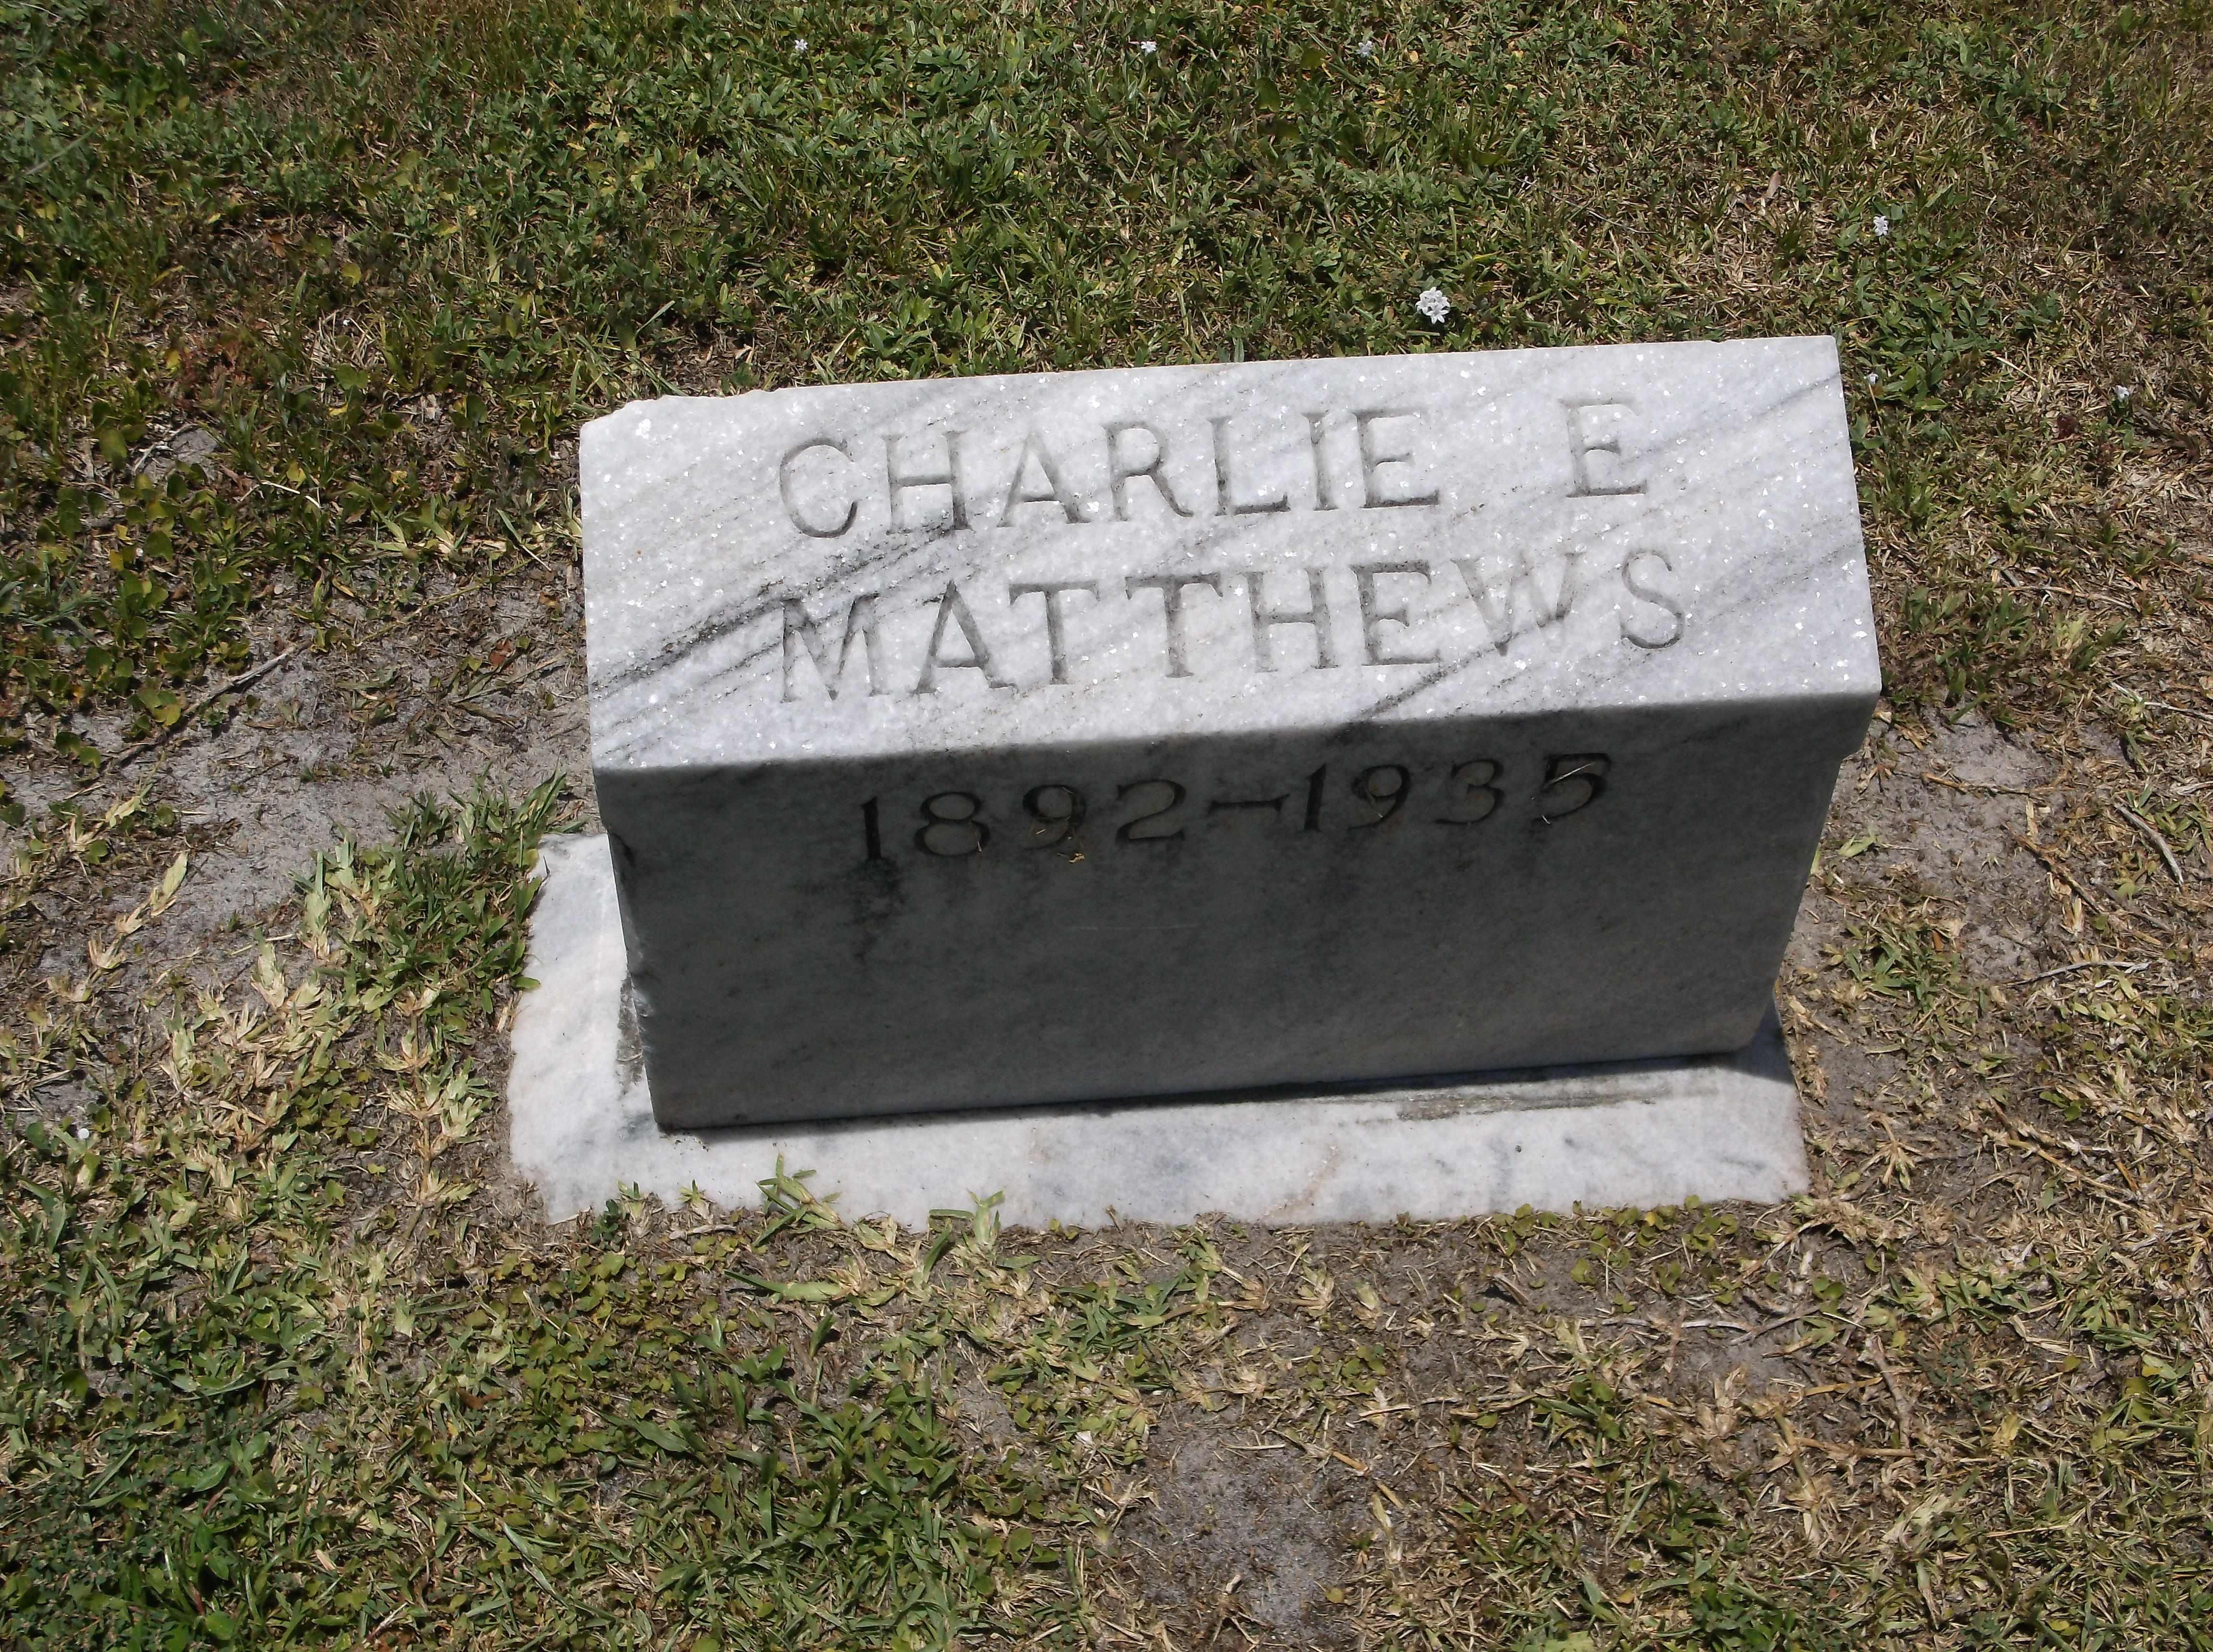 Charlie E Matthews